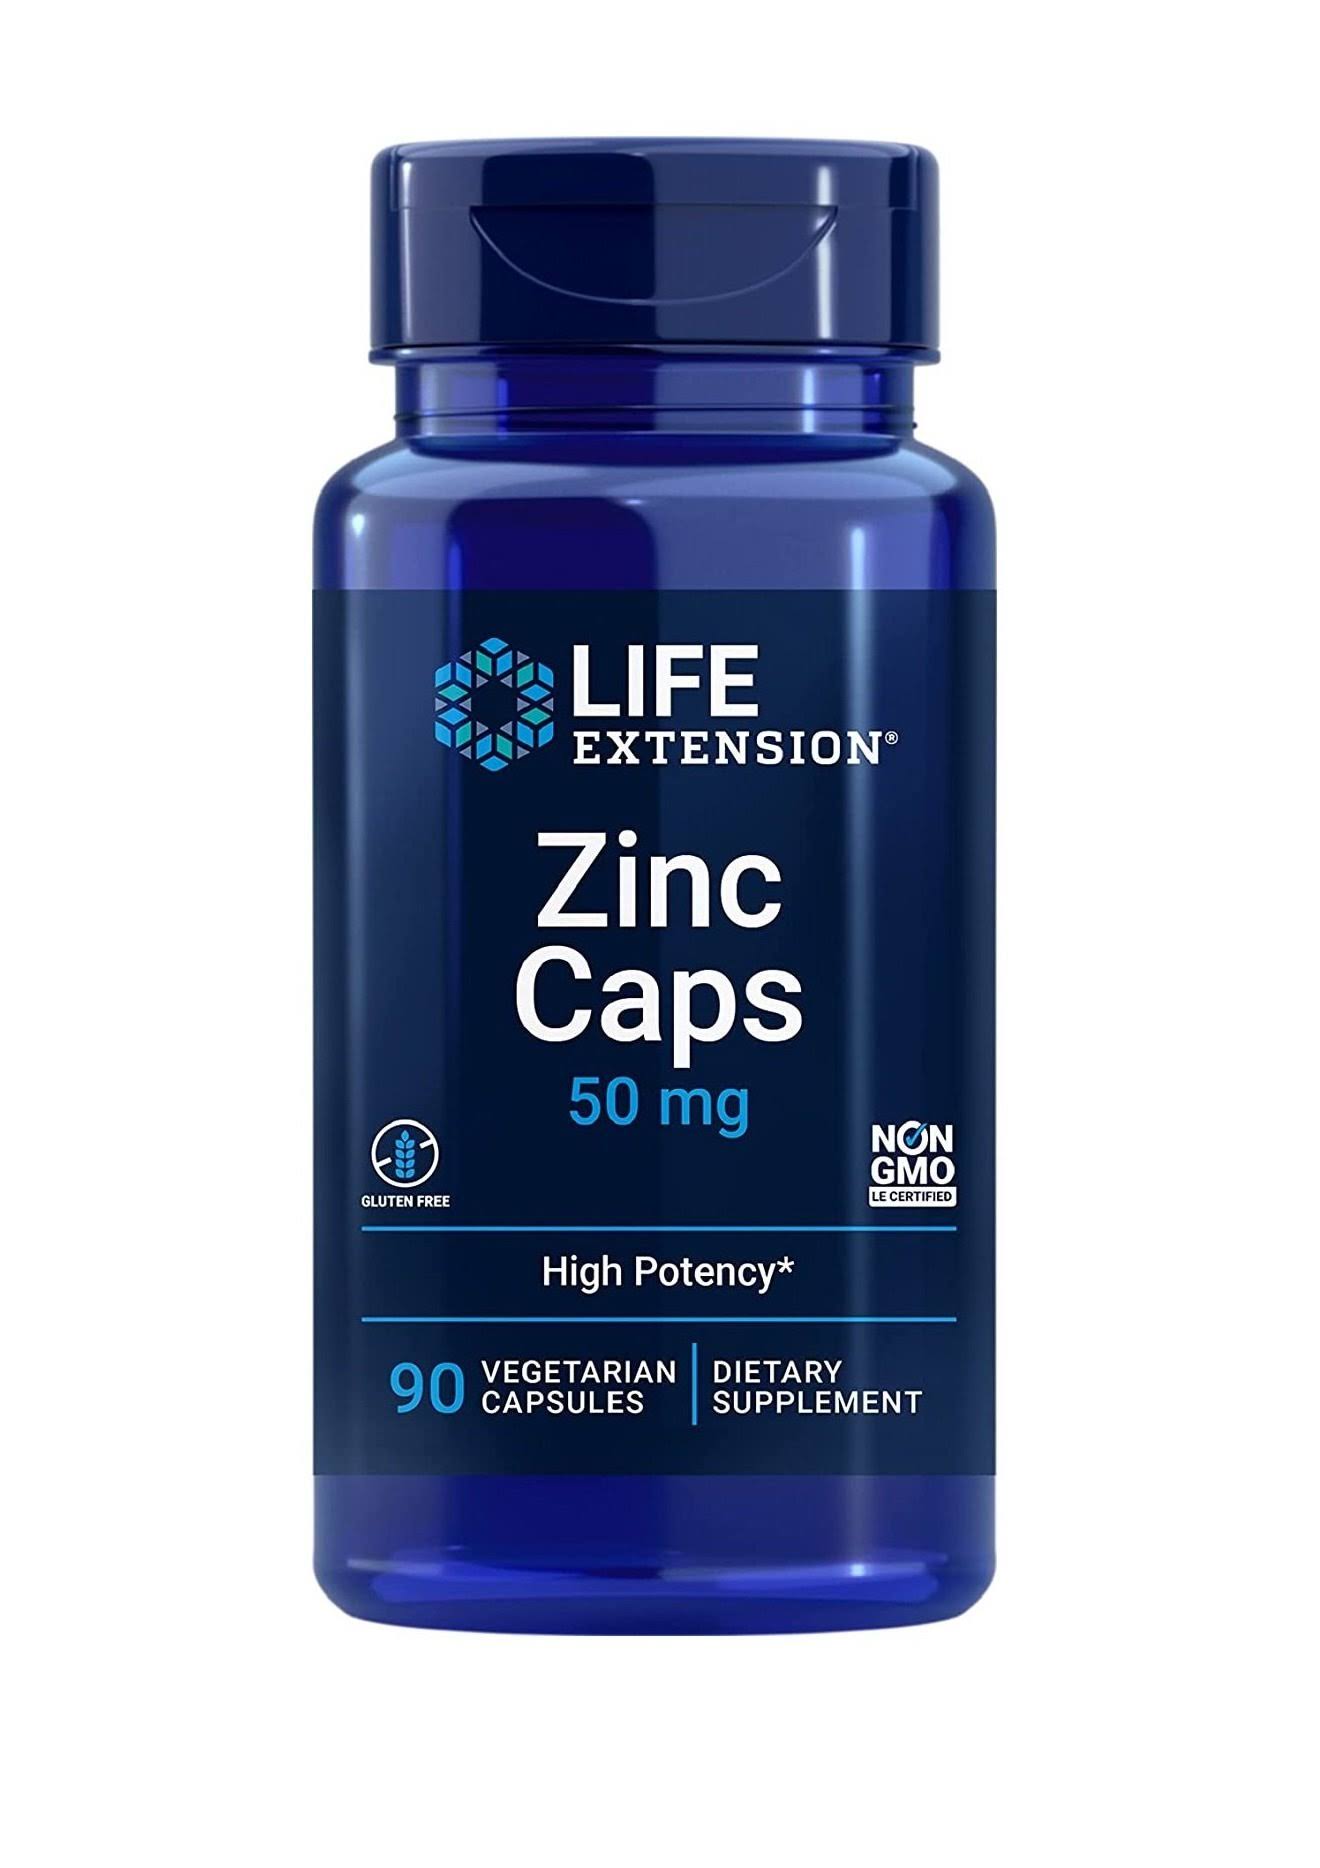 Life Extension Zinc Caps - 50mg, 90 Capsules